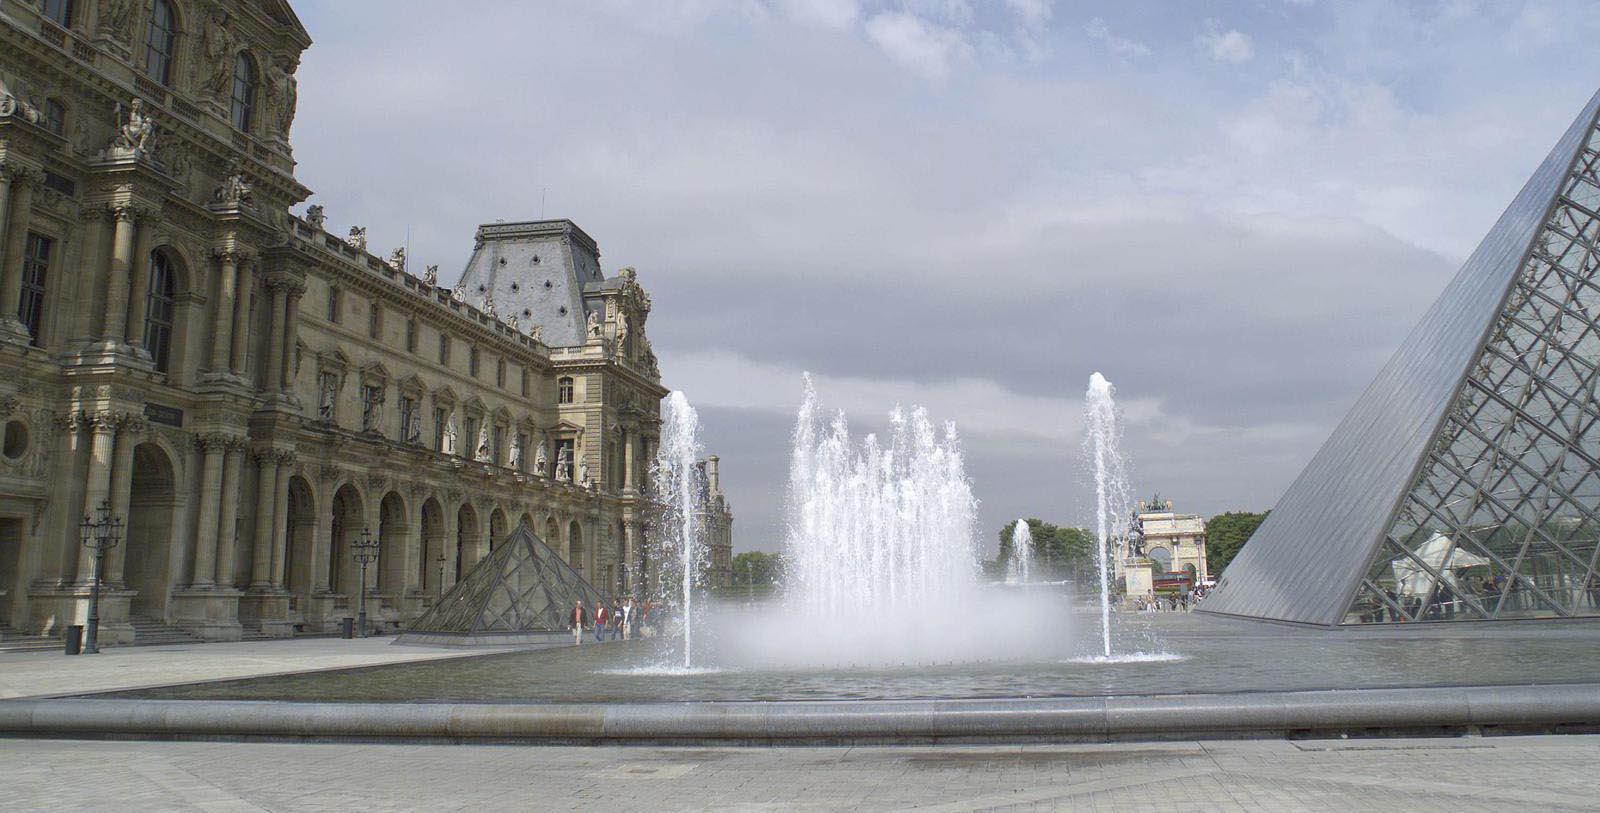 Experience the art on display at the Louvre and the Musée d’Art Moderne de la Ville de Paris.